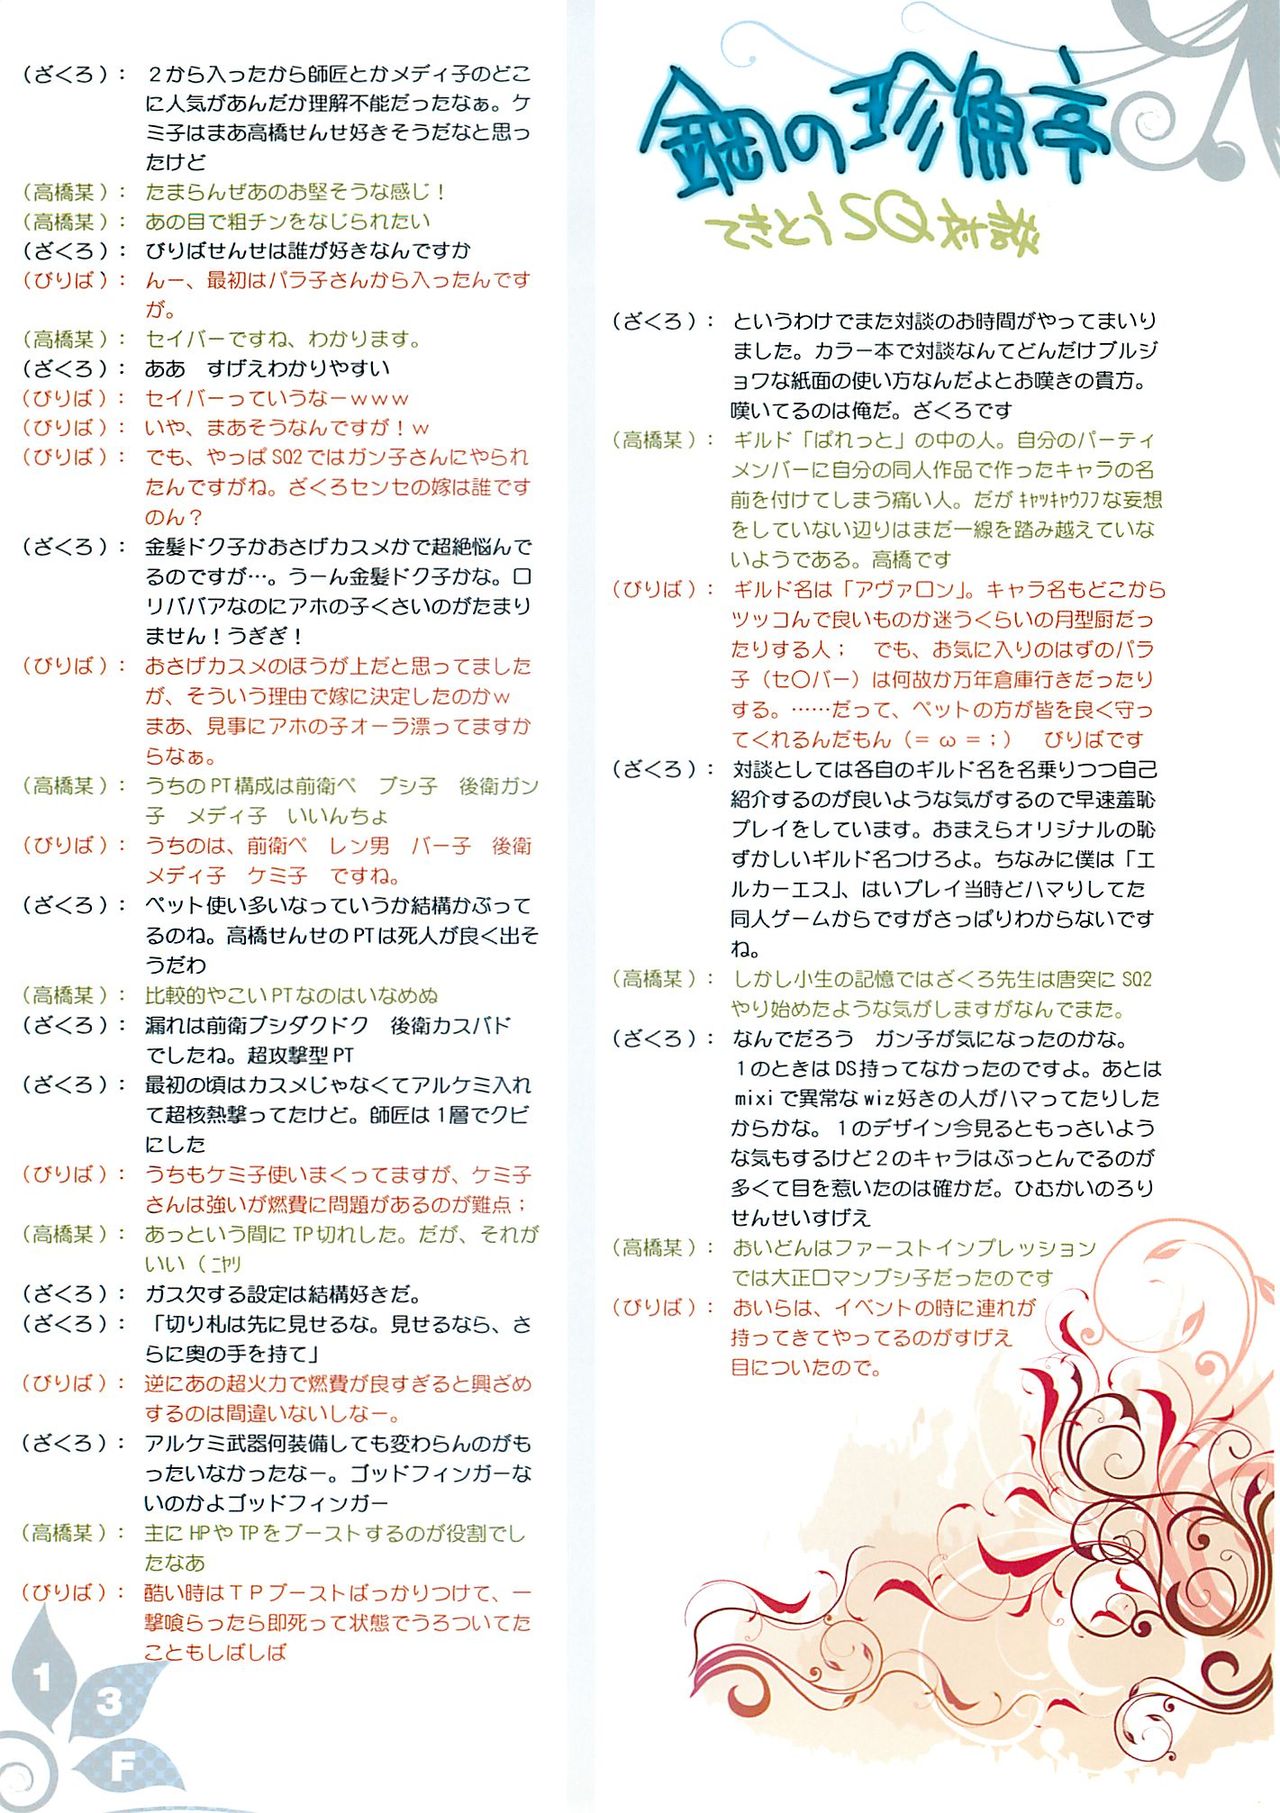 (C74) [Douganebuibui / Dougane buibui (Aburidashi Zakuro)] Kokoro Naeyo Niku niwa Nemuri wo (Sekaiju no MeiQ / Sekaiju no Meikyuu) (C74) [ドウガネブイブイ (あぶりだしざくろ)] 心萎えよ肉には眠りを (世界樹の迷宮)